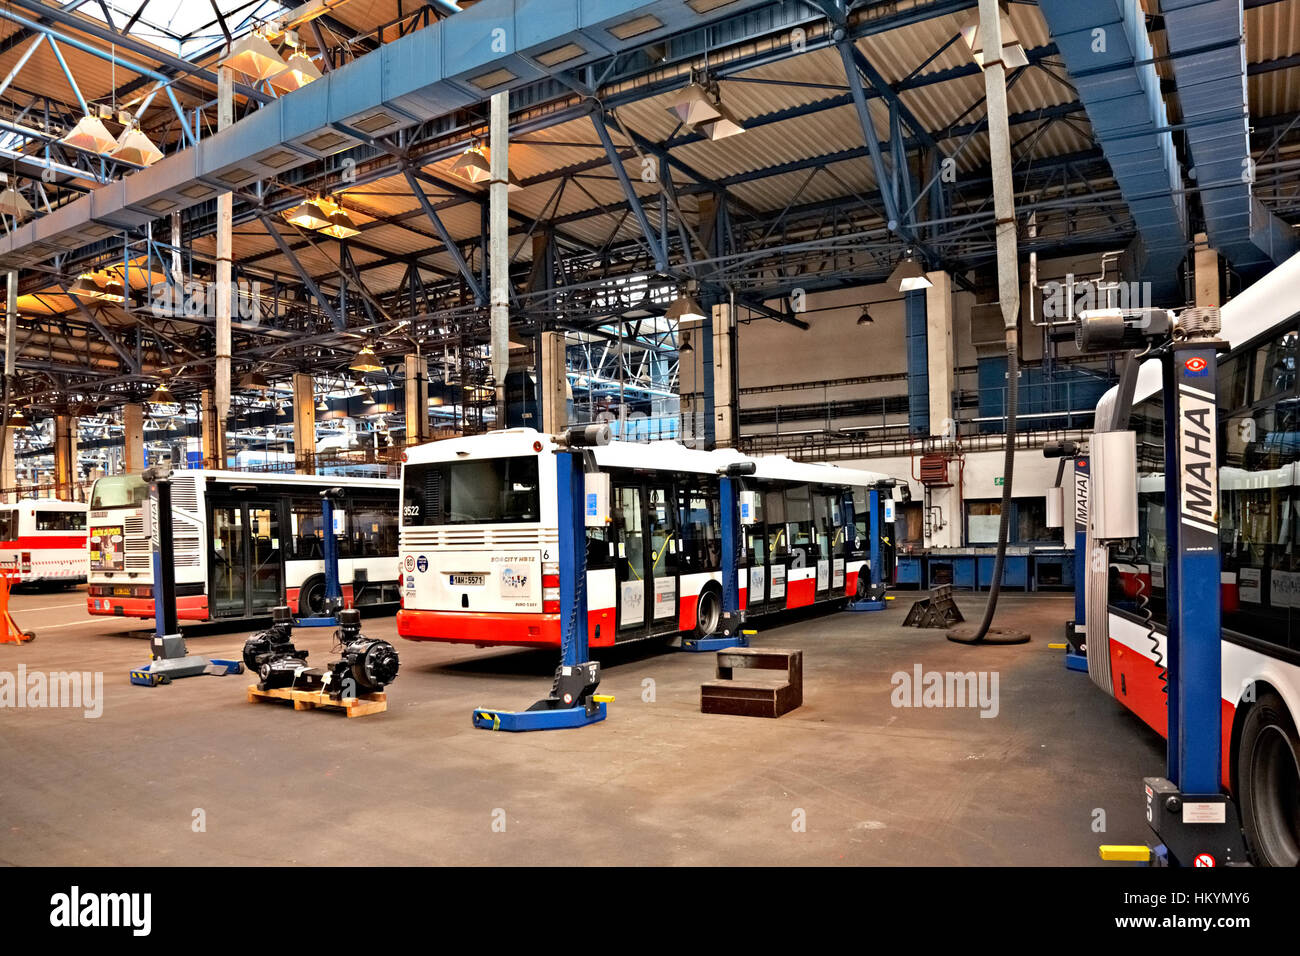 PRAGUE, RÉPUBLIQUE TCHÈQUE - 17 SEPTEMBRE : l'Inspection des autobus publics de châssis en atelier en Depot Hostivar sur Journée portes ouvertes dans le public de Prague Tran Banque D'Images